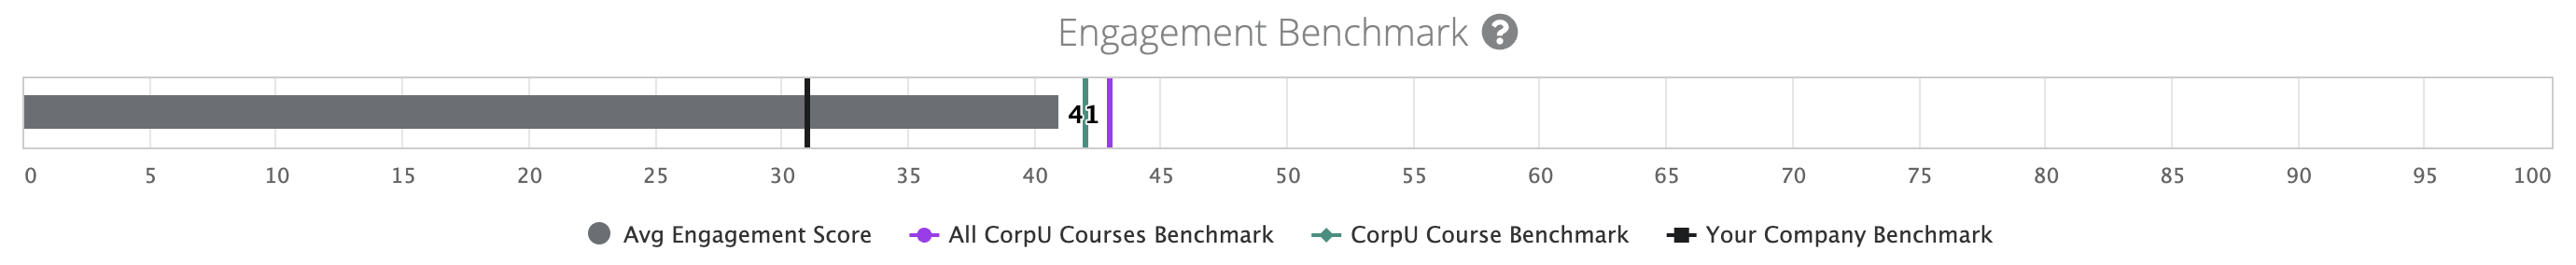 engagement benchmark